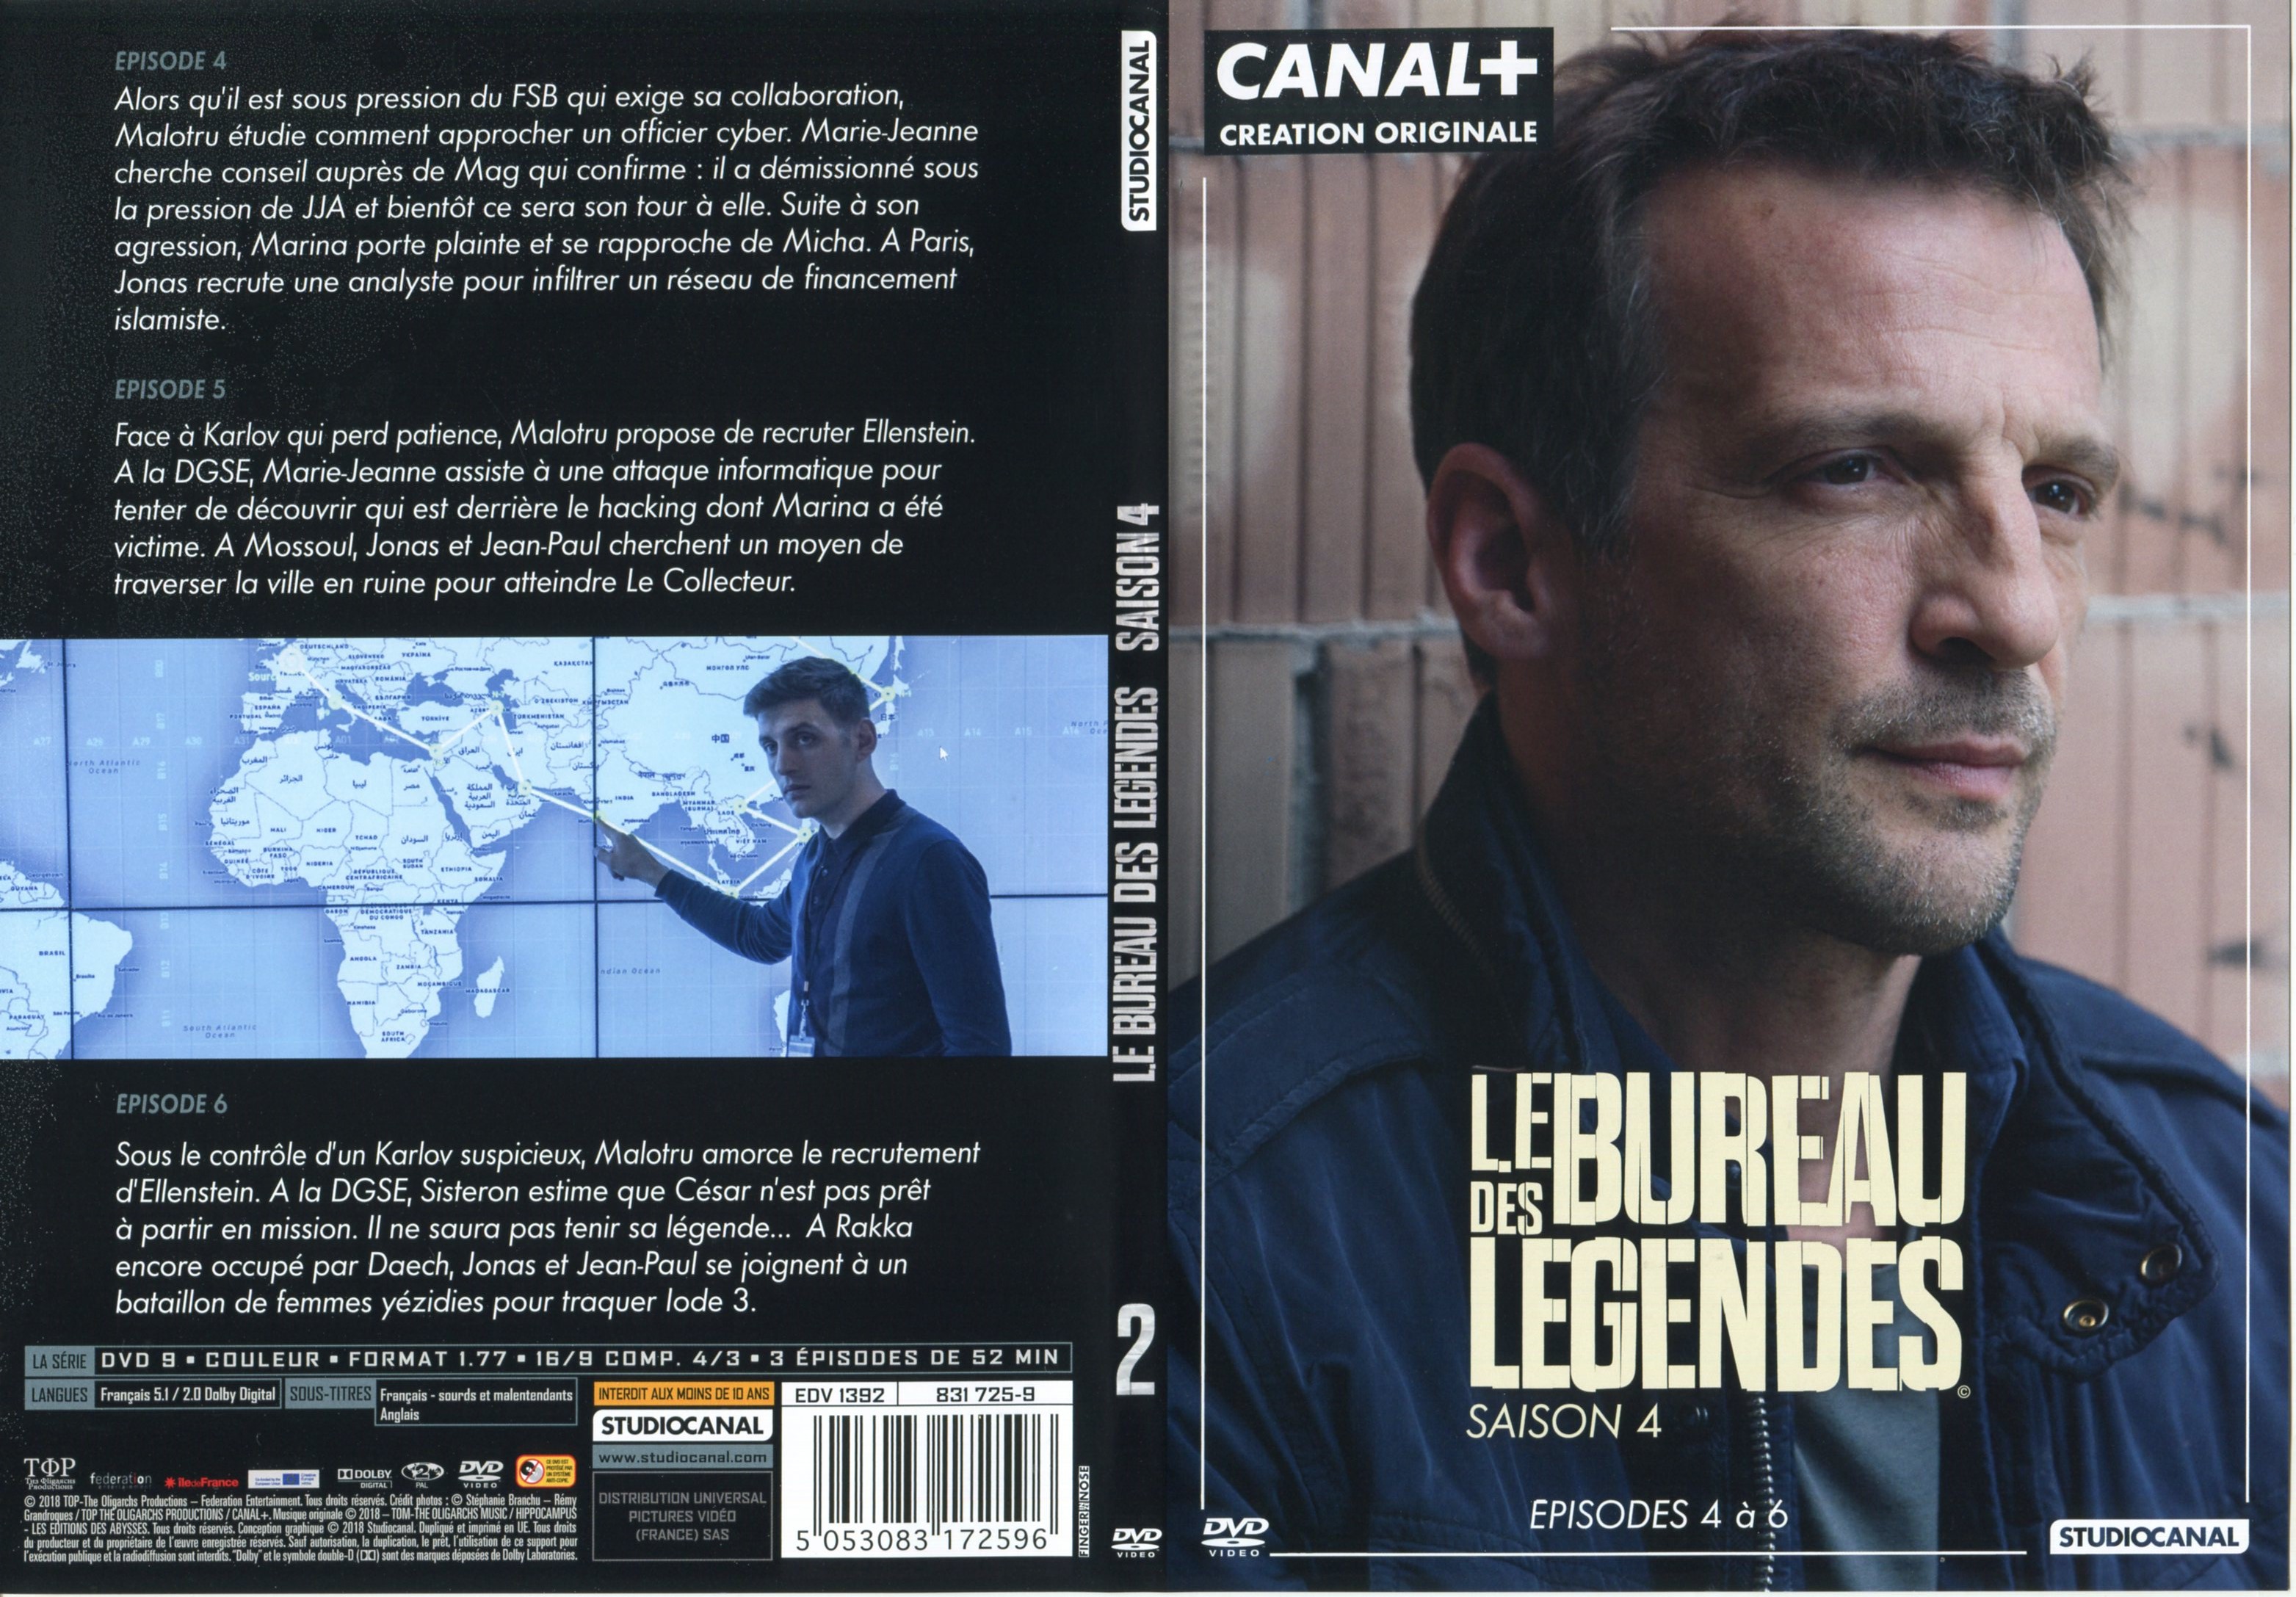 Jaquette DVD Le Bureau des Legendes Saison 4 DVD 2